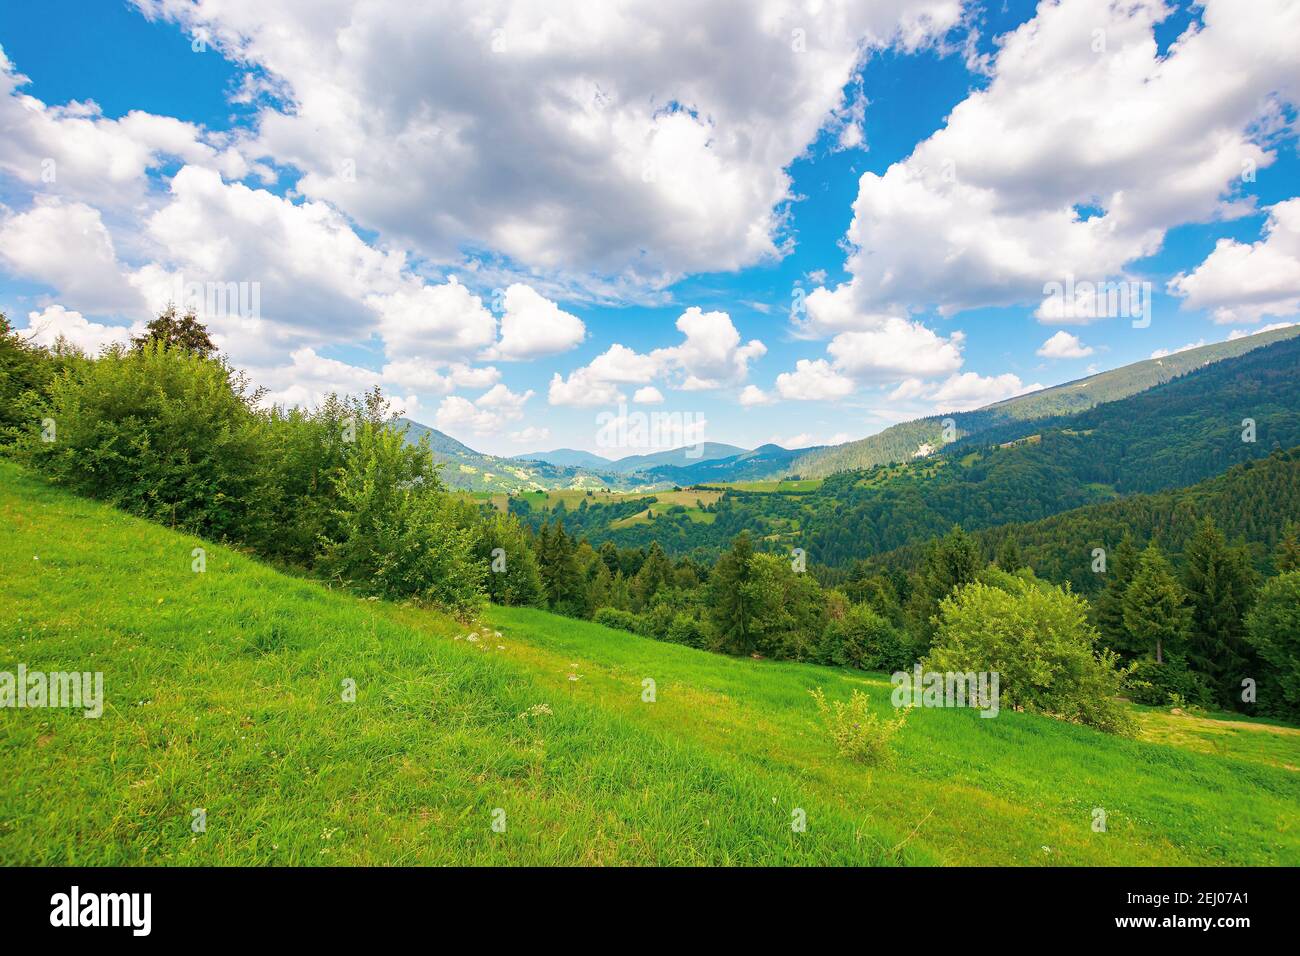 Sommerlandschaft in den karpaten. Schöne Naturlandschaft mit Bäumen auf der Wiese. Flauschige Wolken am hellblauen Himmel. Wunderbare tr Stockfoto